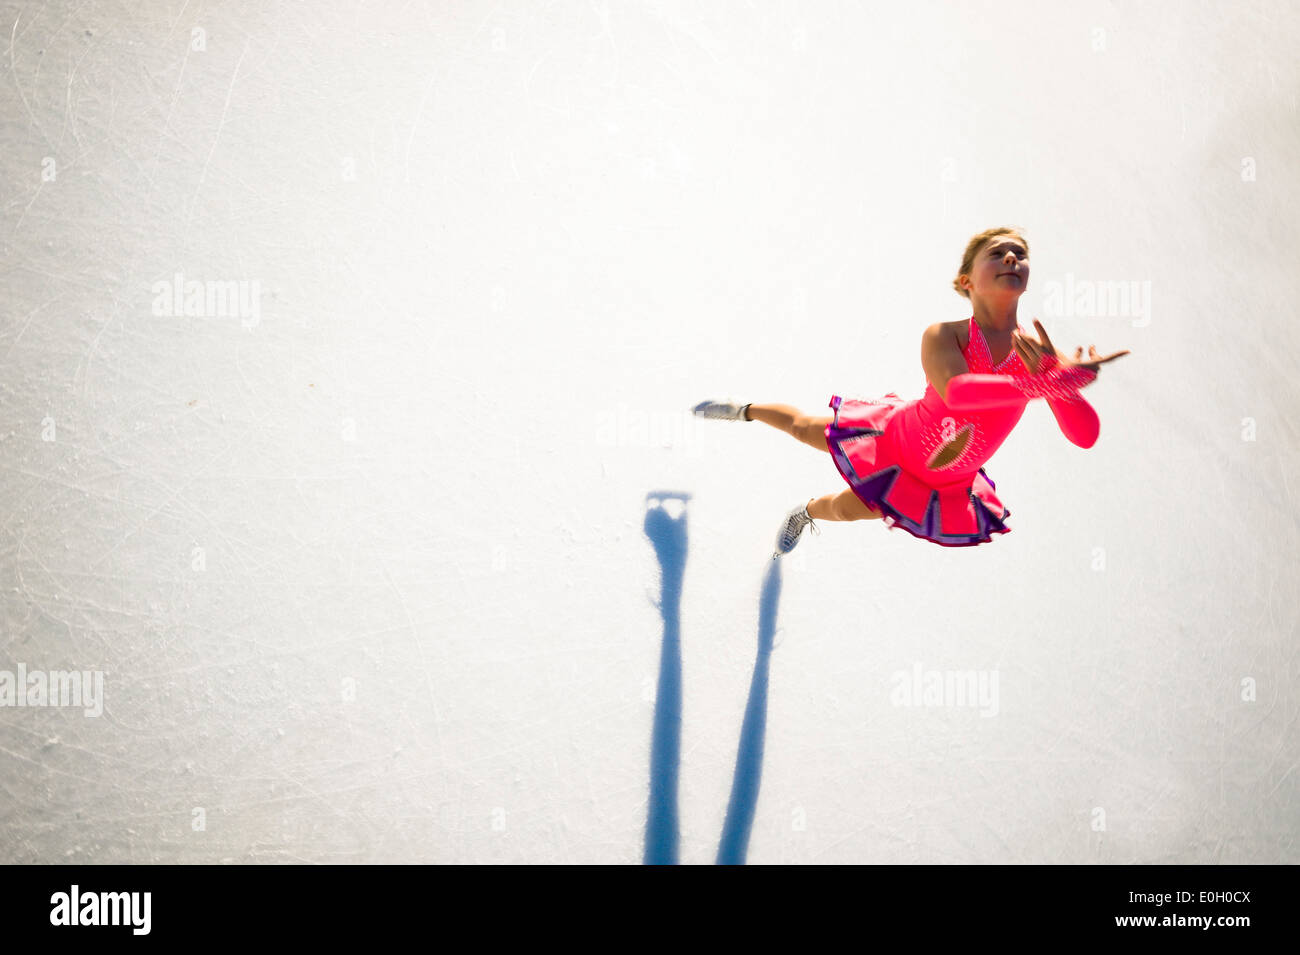 Abbildung Schlittschuhläufer auf der Eisbahn Stockfoto